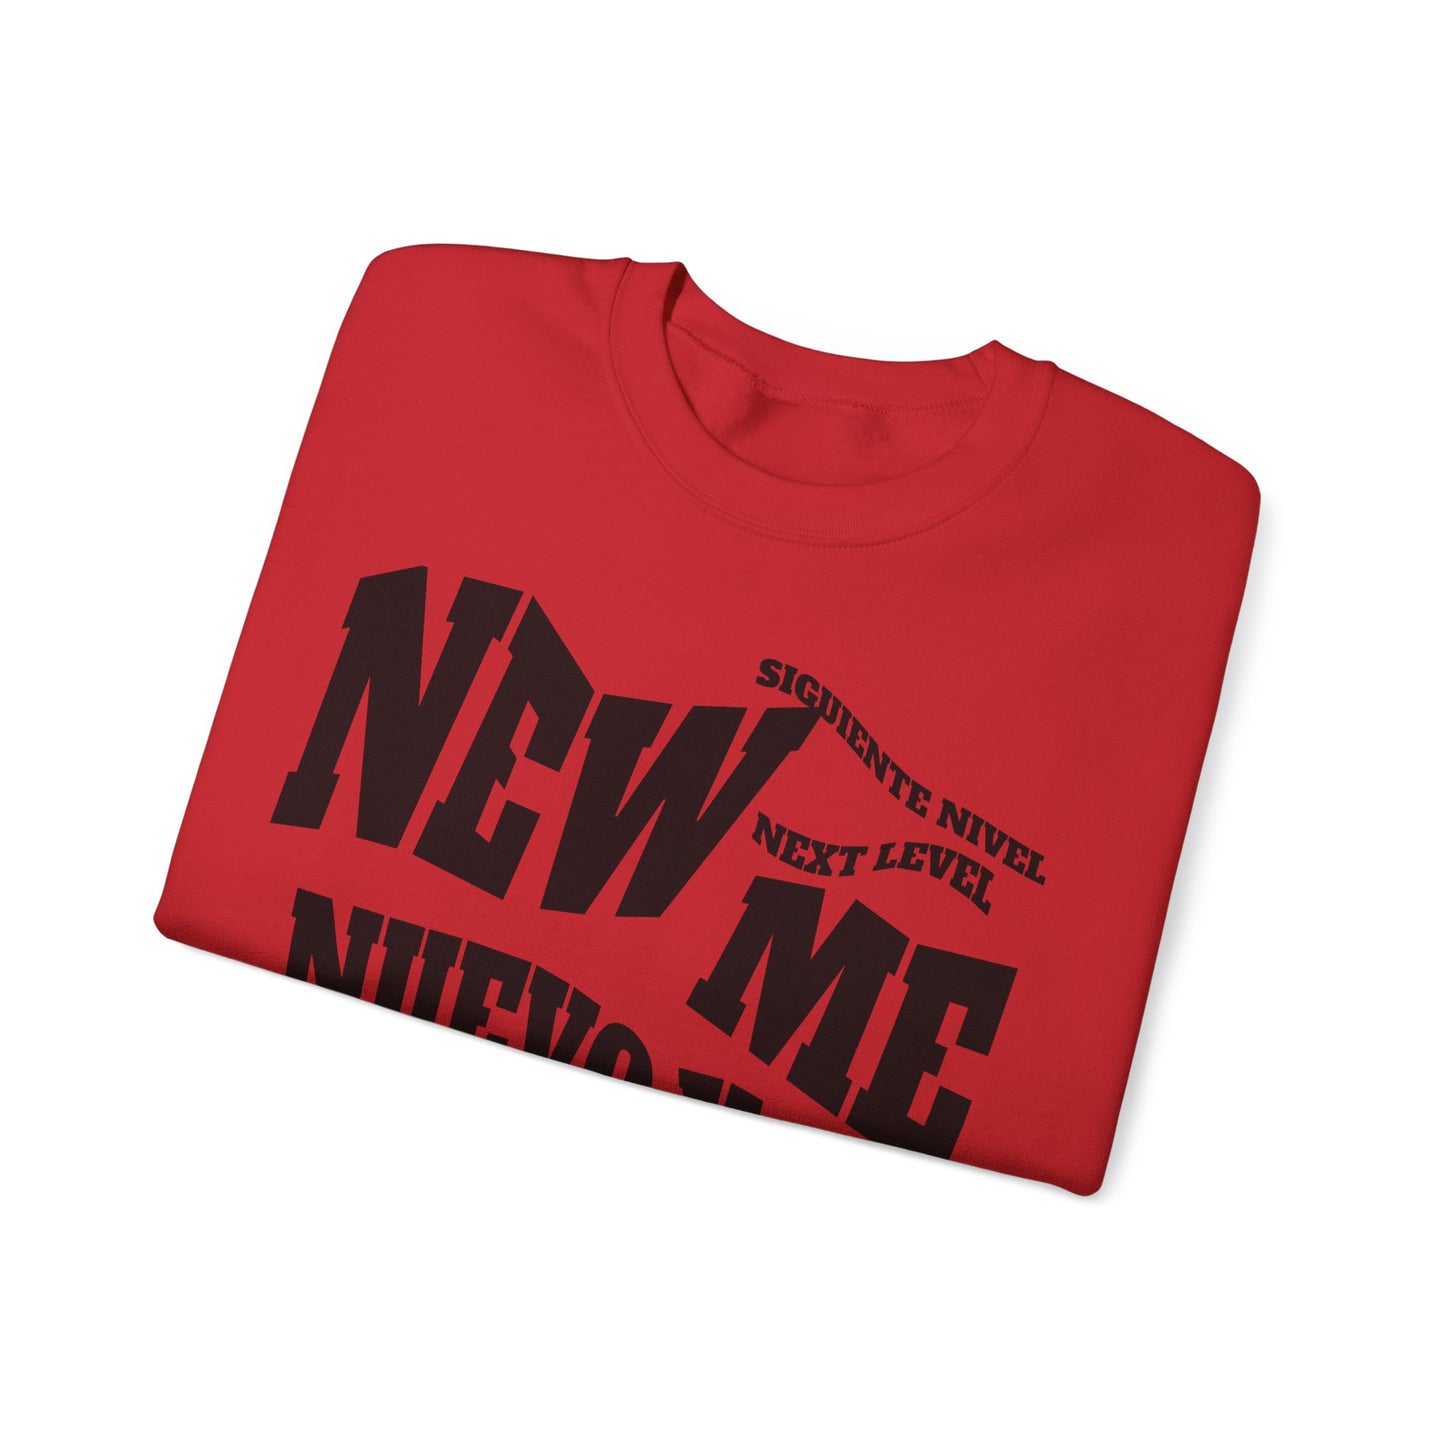 Unisex Heavy Blend™ Crewneck Sweatshirt, good design concept, New Me, Nuevo Yo, Nueva Yo